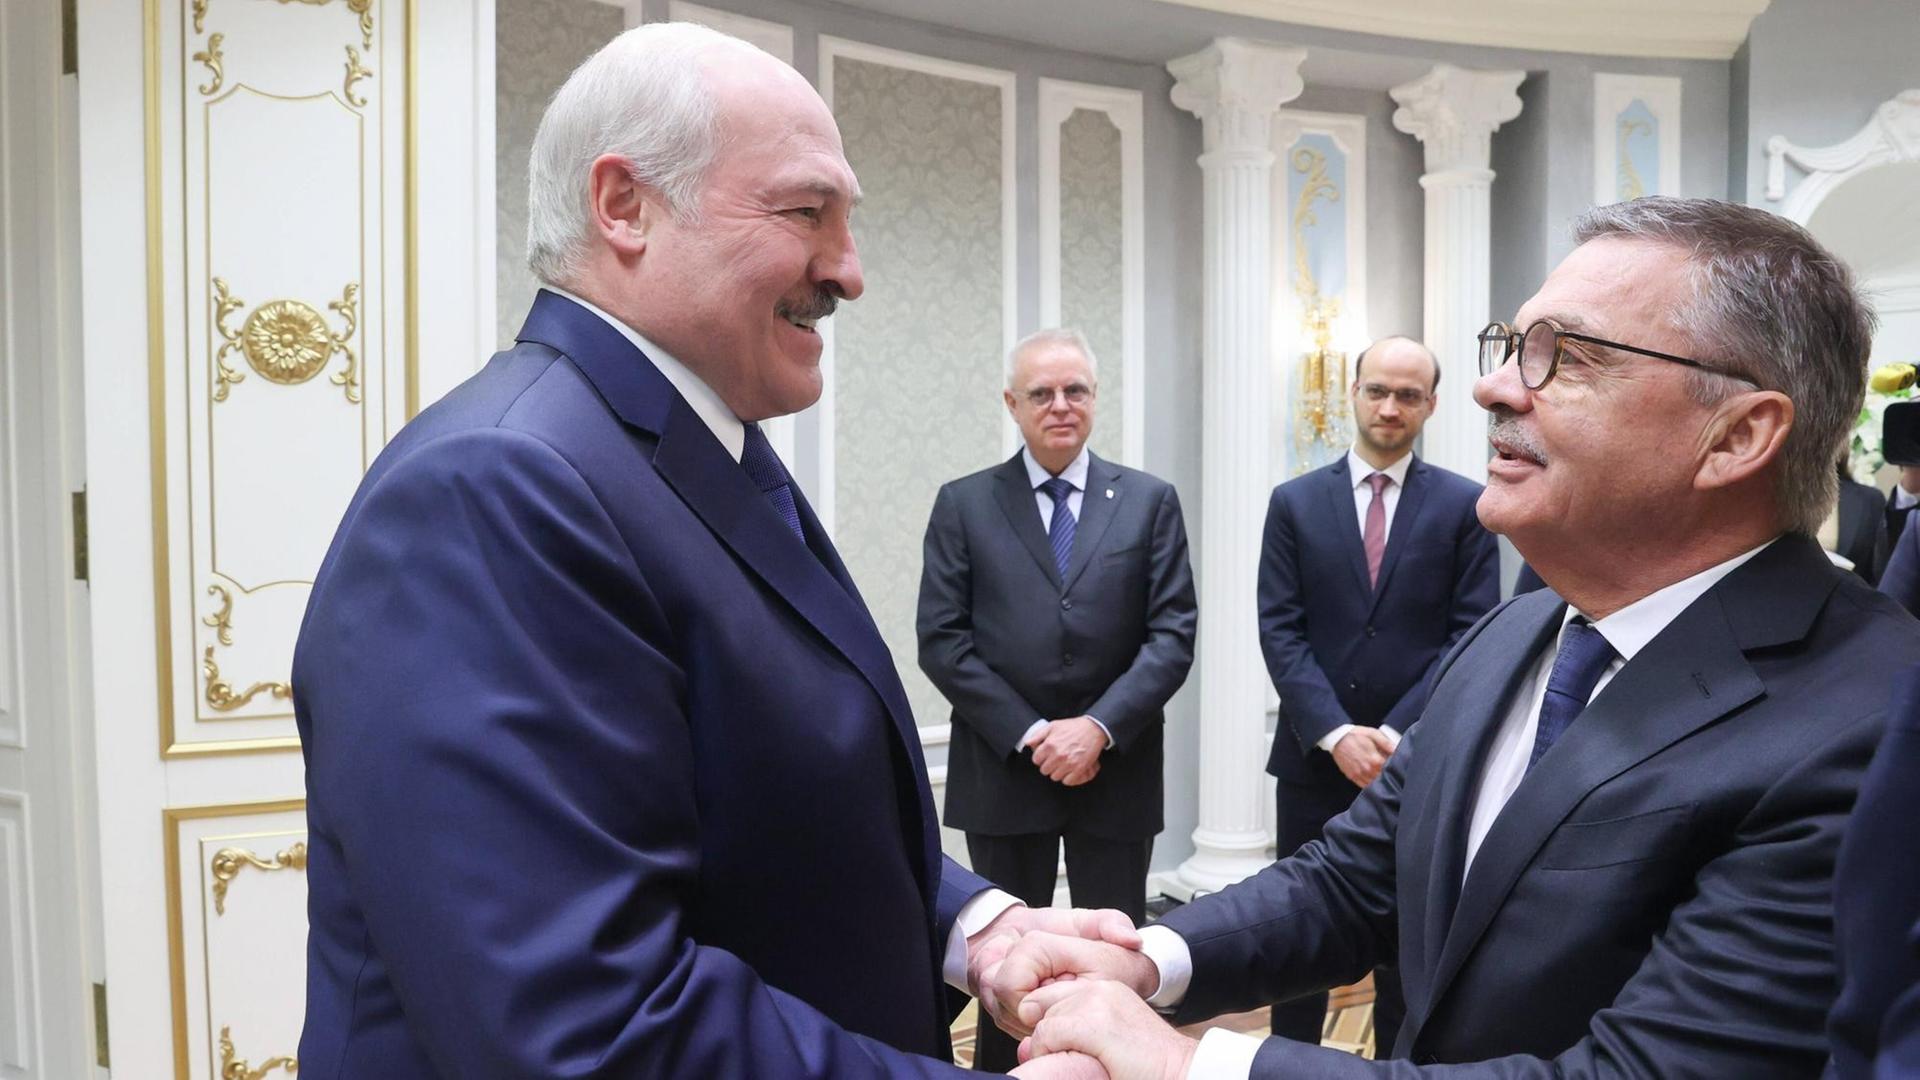 Das Foto wurde am 11. Januar 2021 aufgenommen. Zu sehen ist der Präsident von Belarus Alexander Lukashenko und der Prädident des internationalen Eishockeyverbands Rene Fasel. Sie geben sich die Hand.